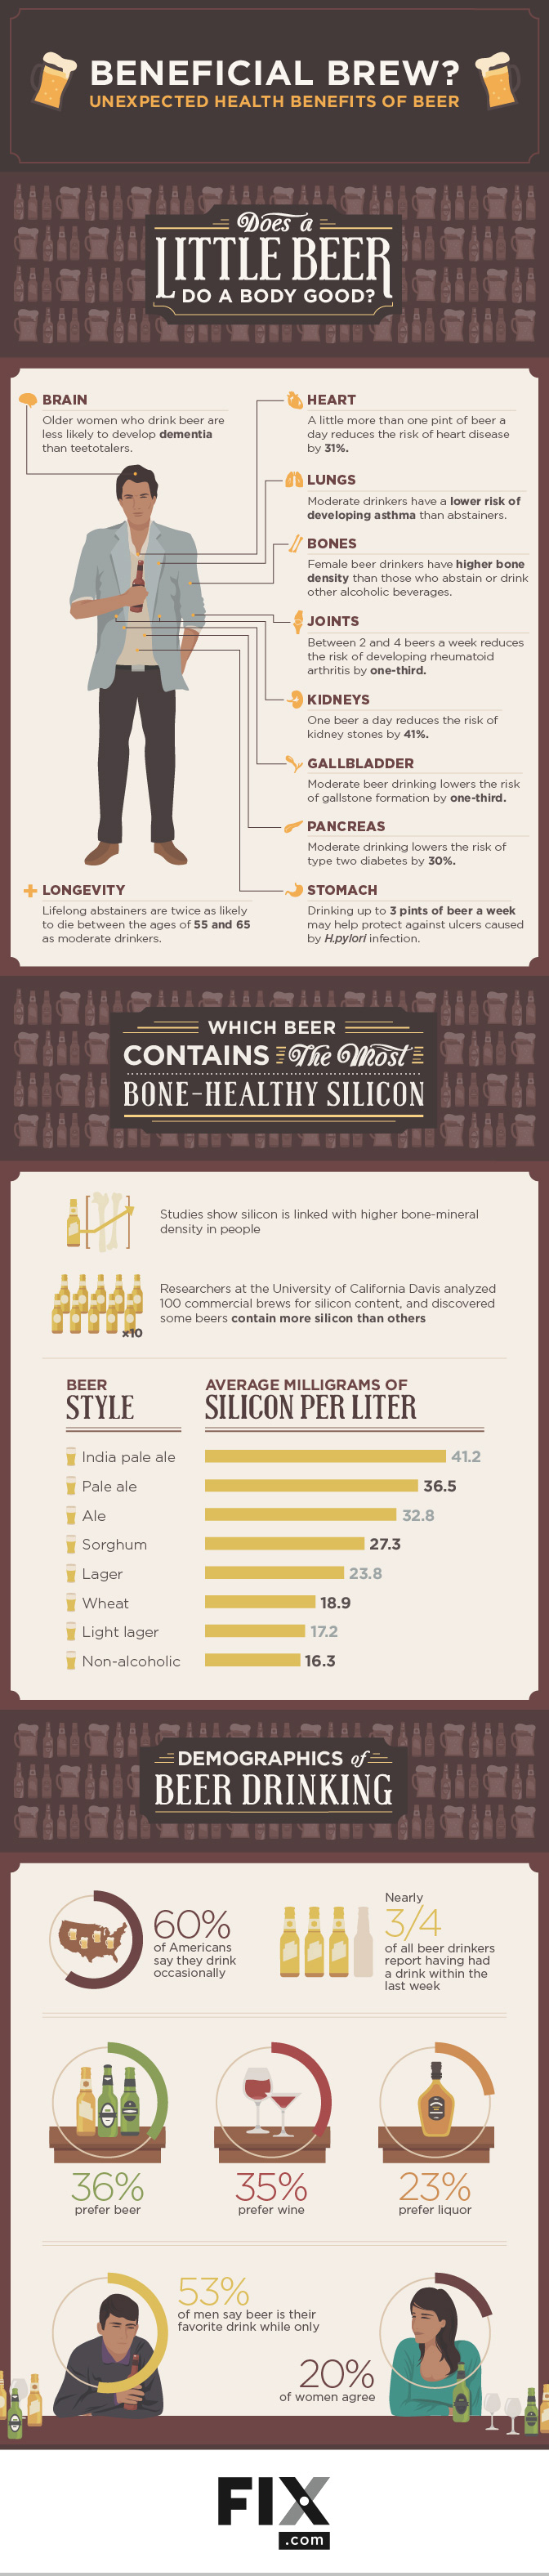 Health Benefits of Beer Infographic